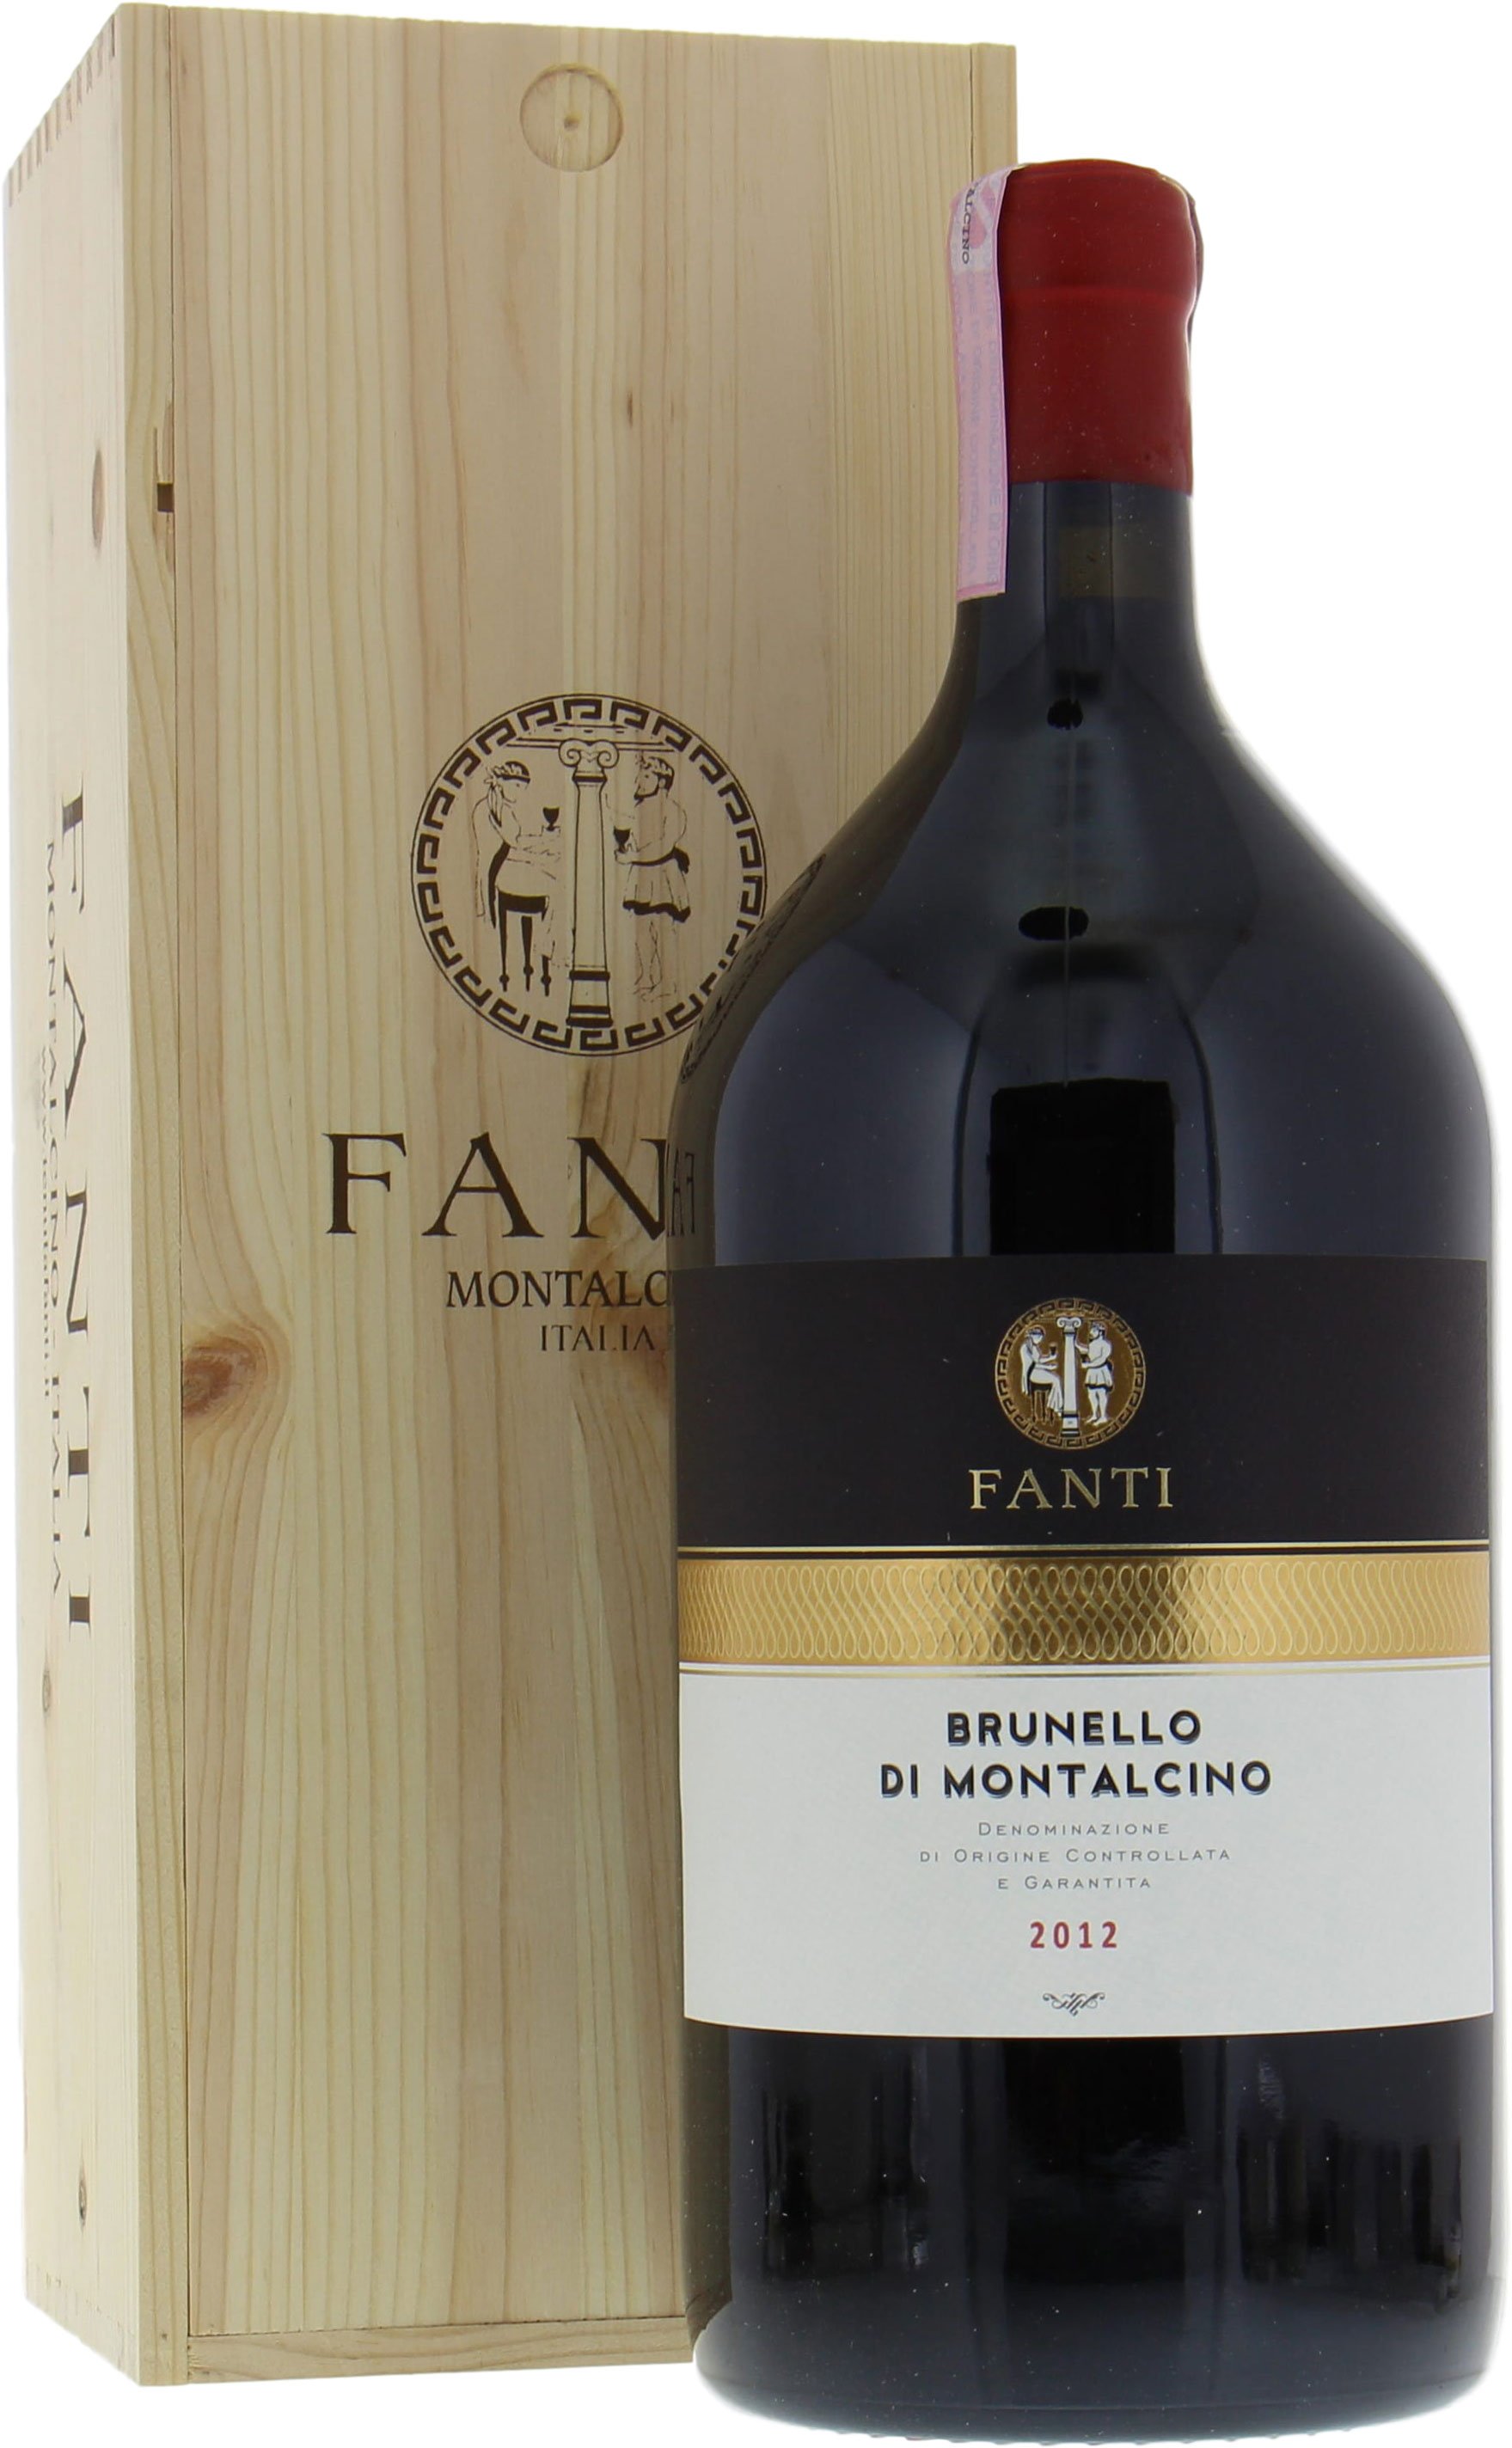 Tenuta Fanti - Brunello di Montalcino 2012 From Original Wooden Case